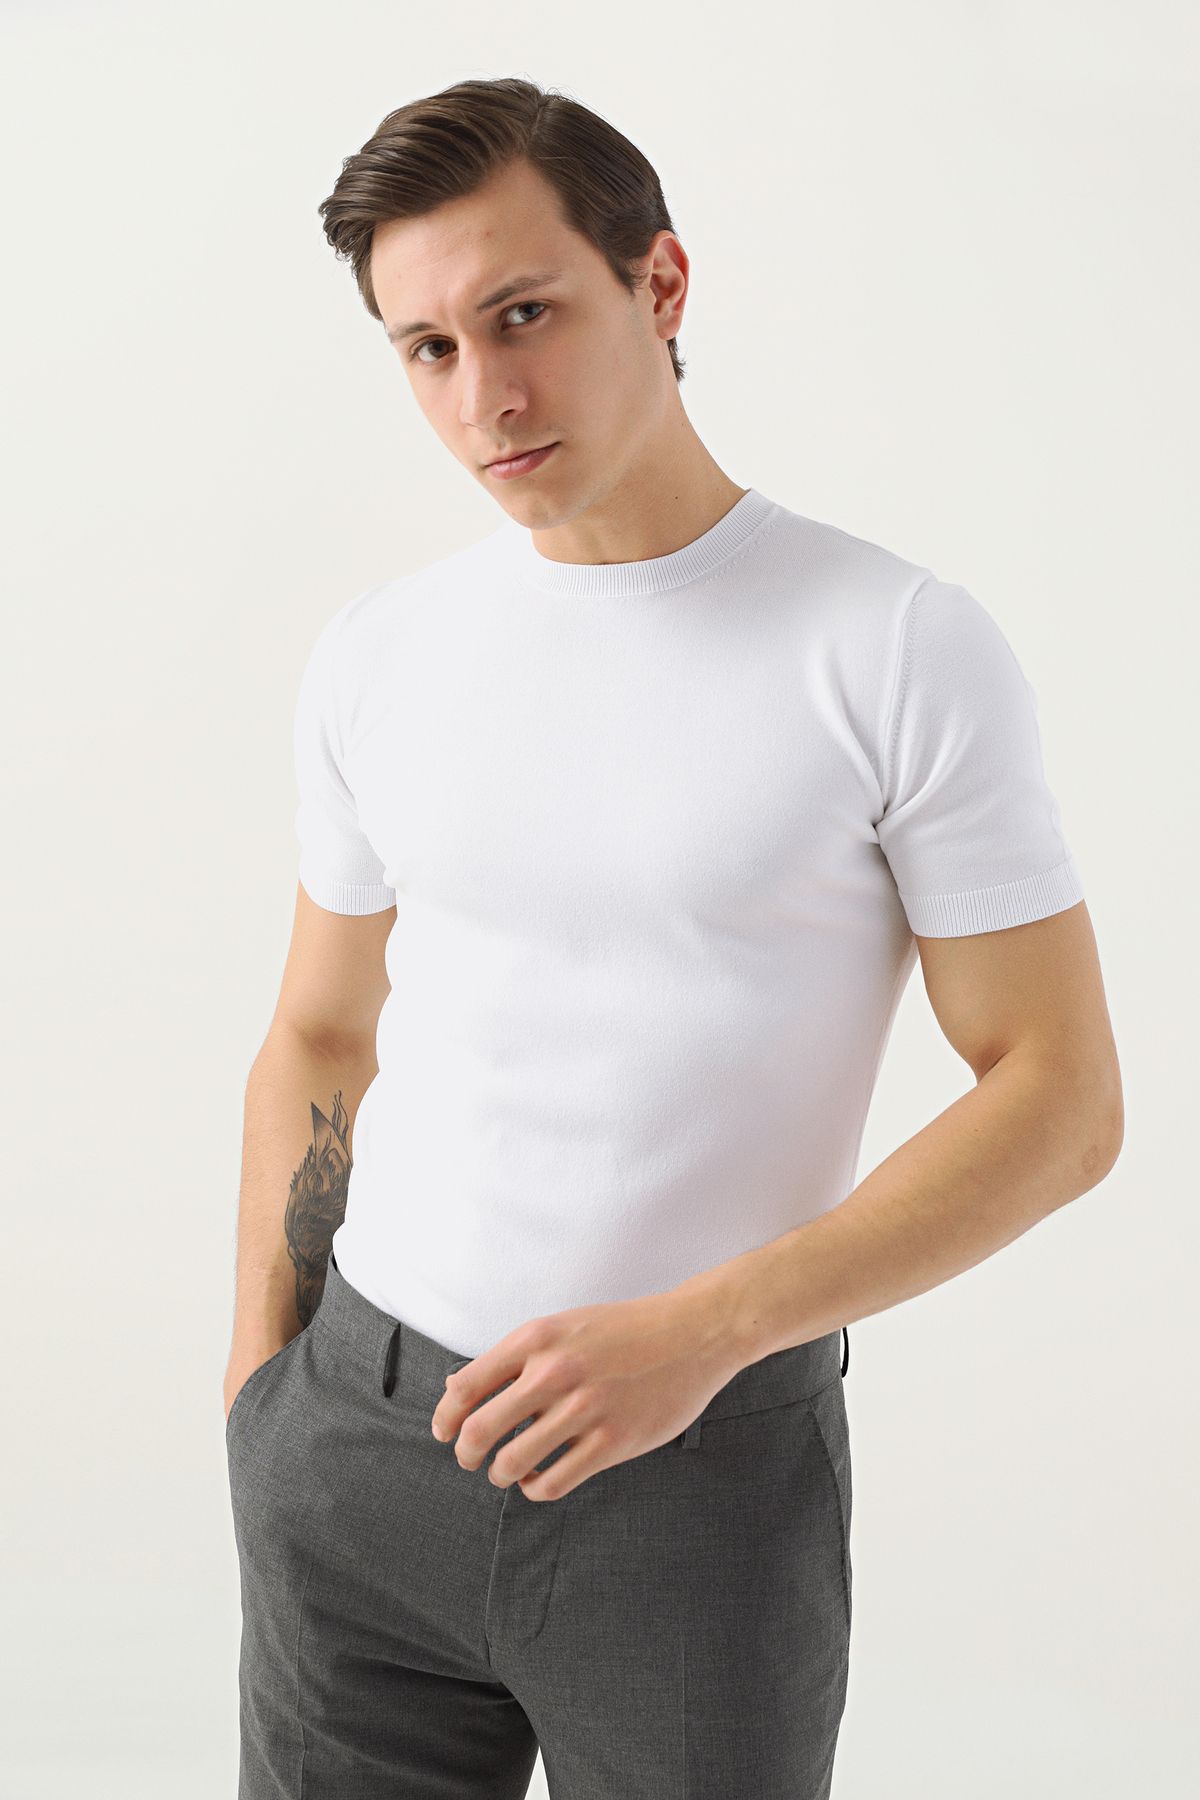 TWN Slim Fit Beyaz Düz Örgü Rayon Örme T-shirt